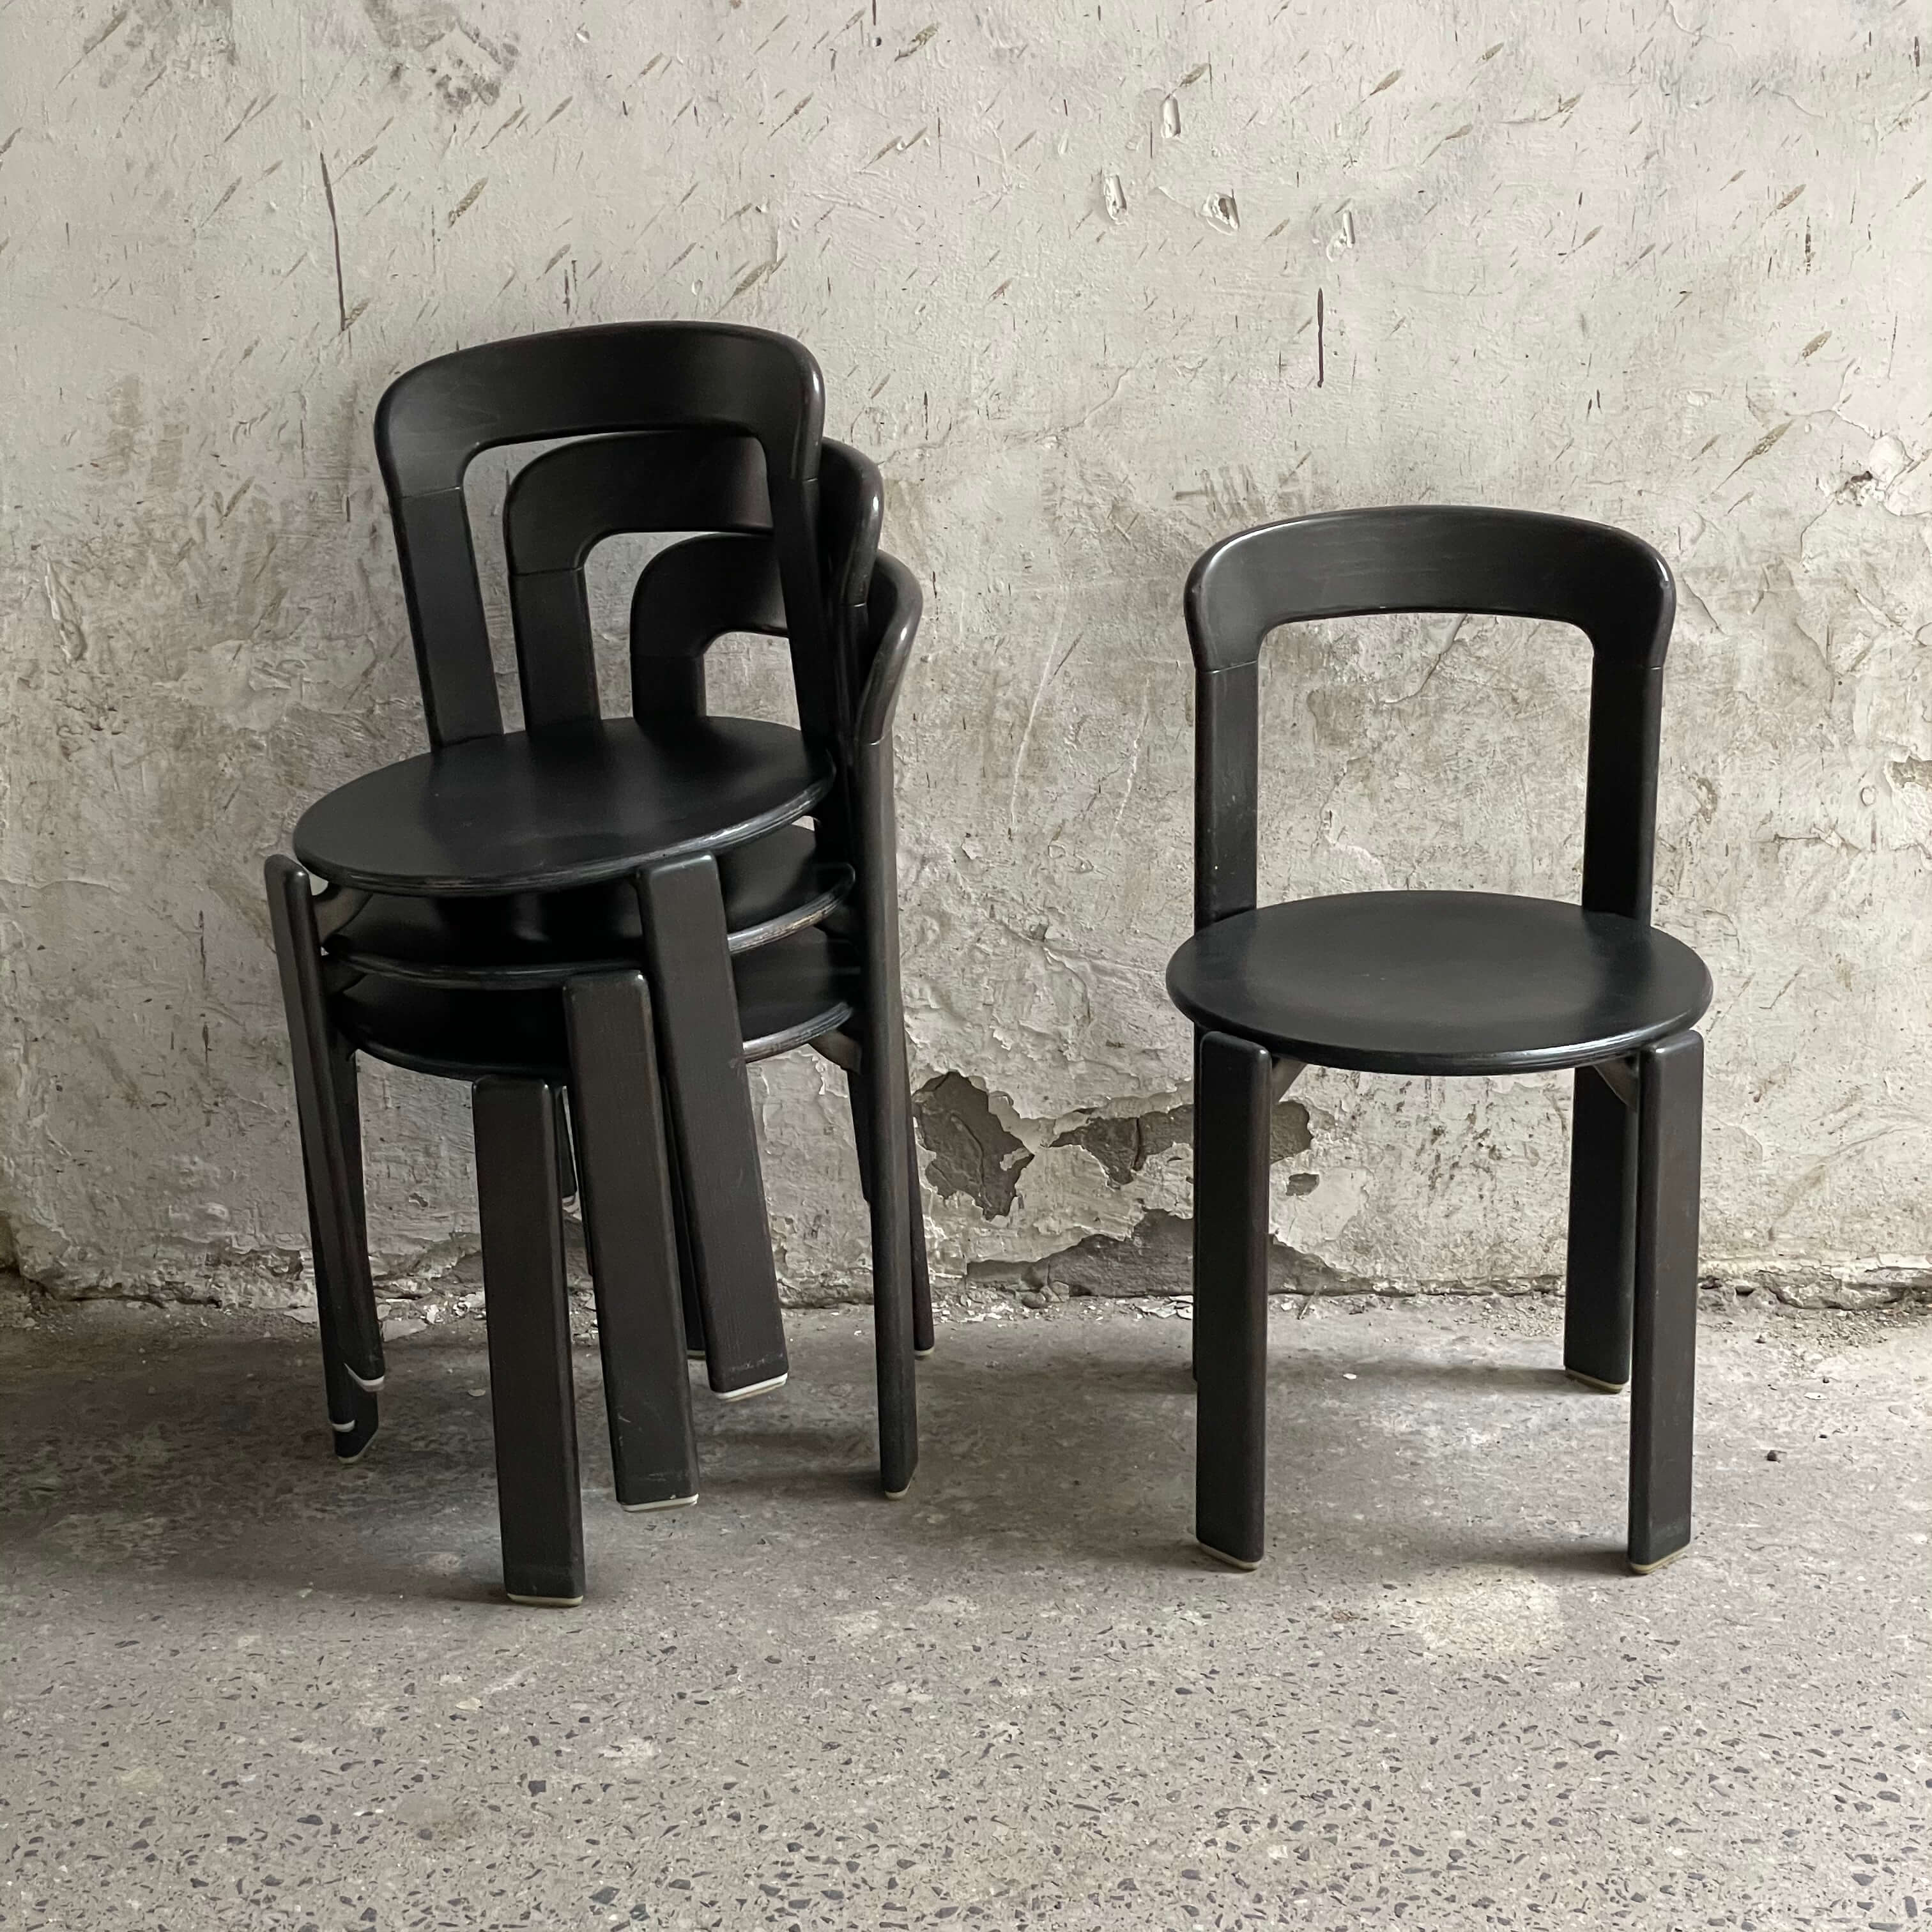 bruno rey krzesła warszawa stacking kusch co chairs black